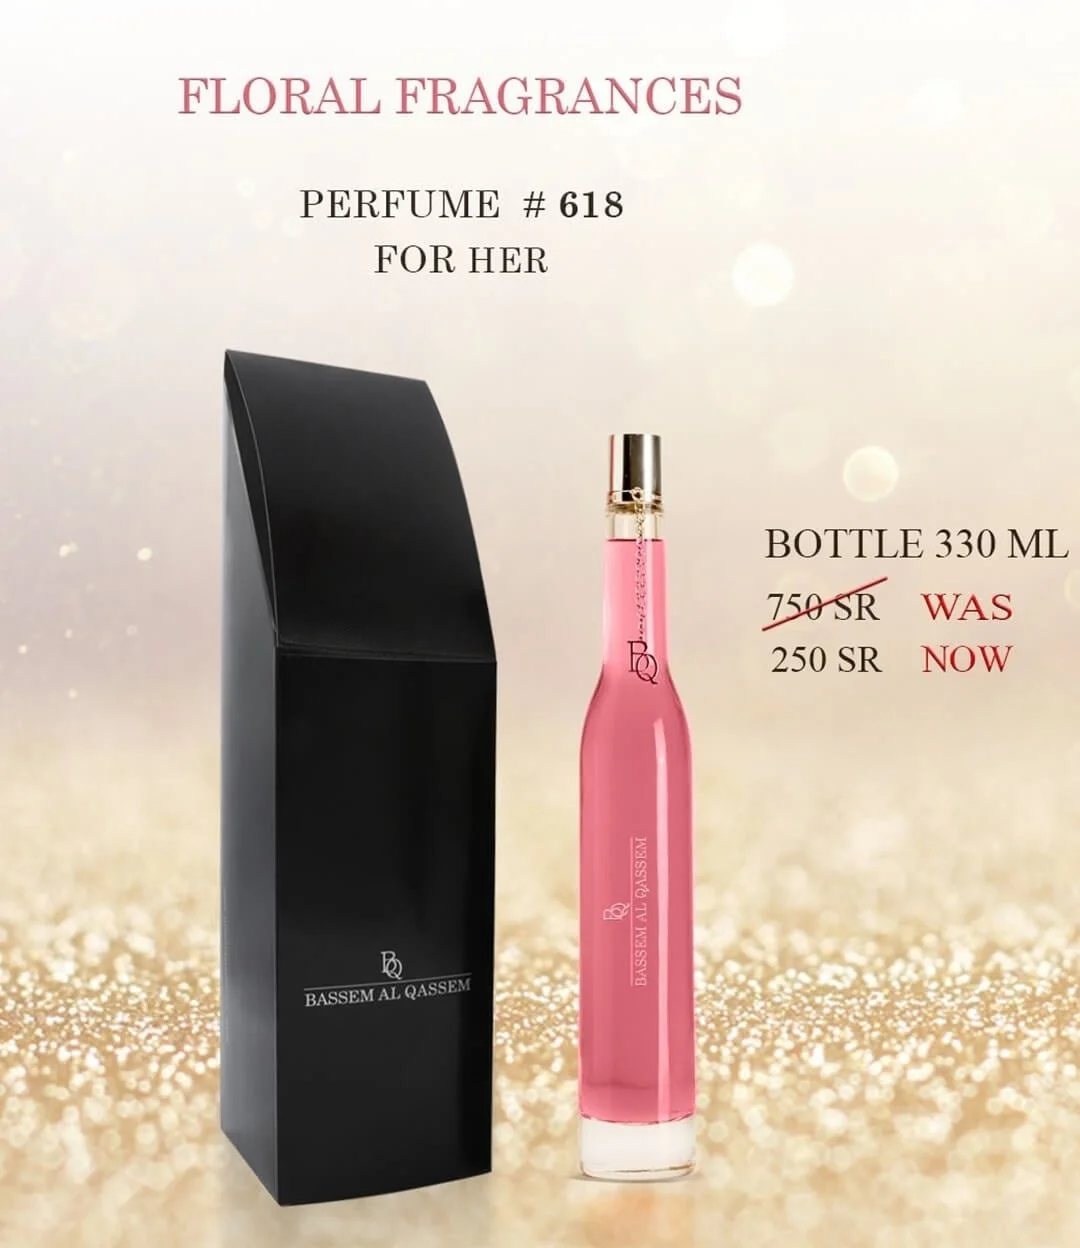 Perfume #618 Floral Fragrance for Her by Bassem Al Qassem 